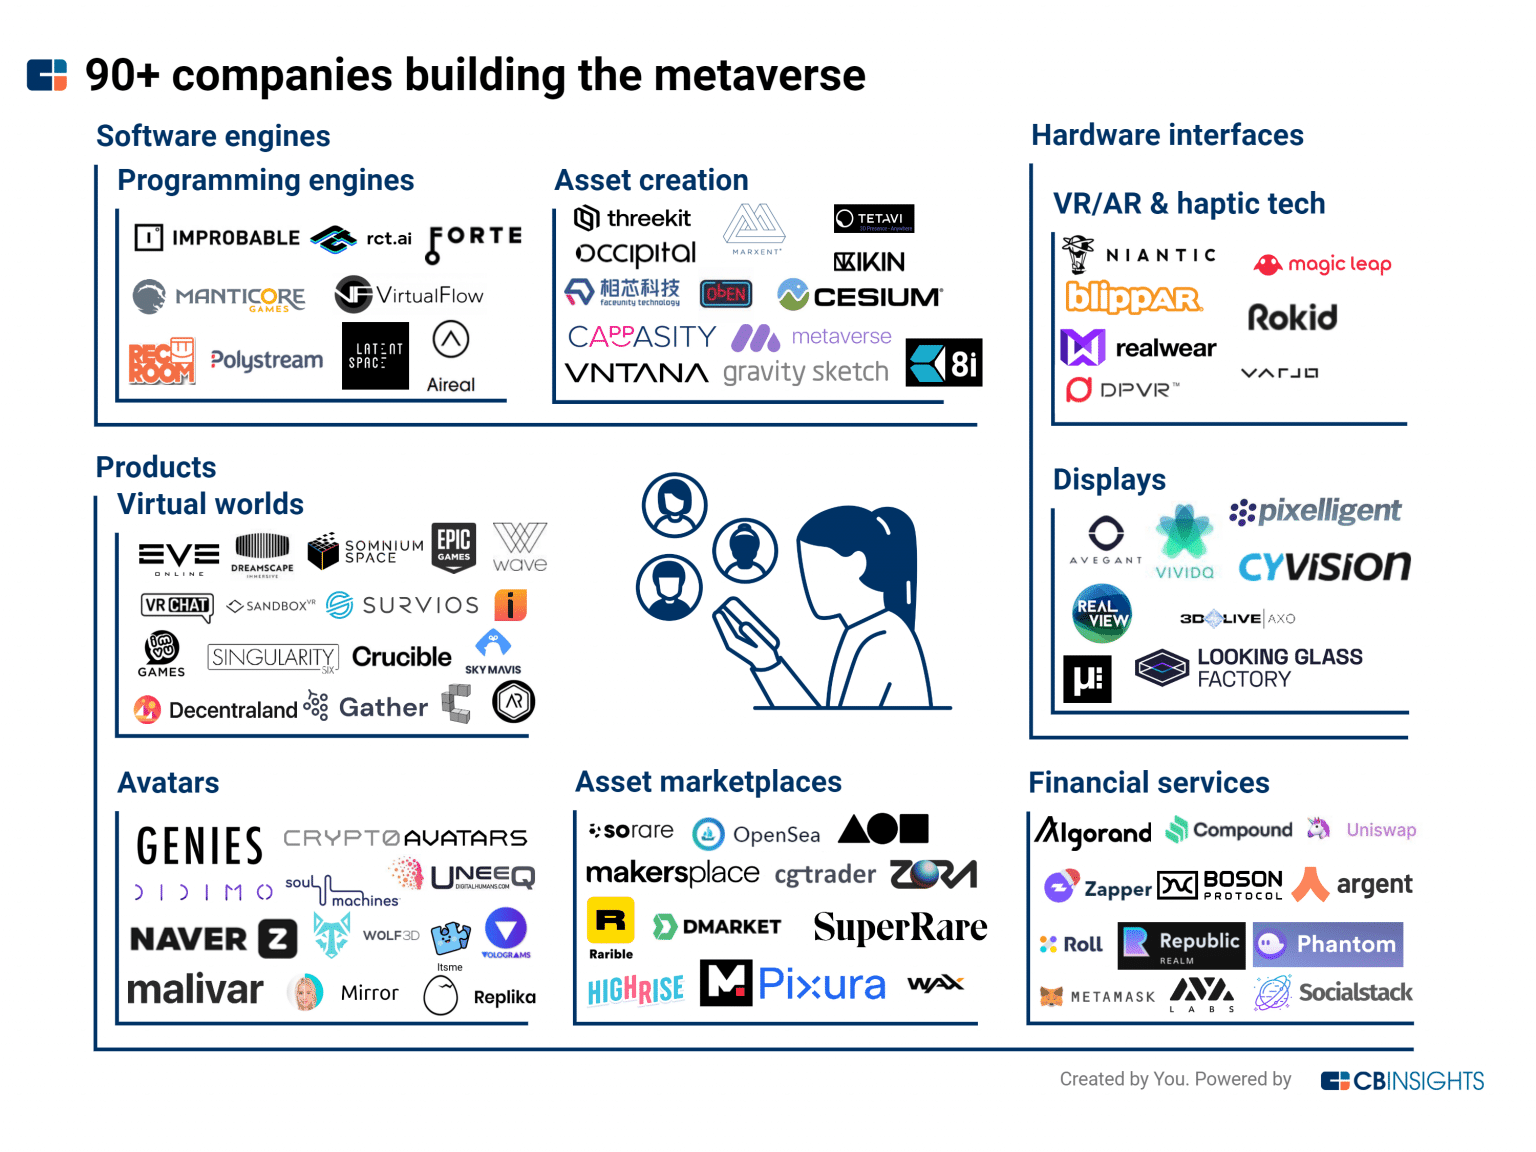 Las 90 empresas que construyen el metaverso (Fuente: CB Insights)